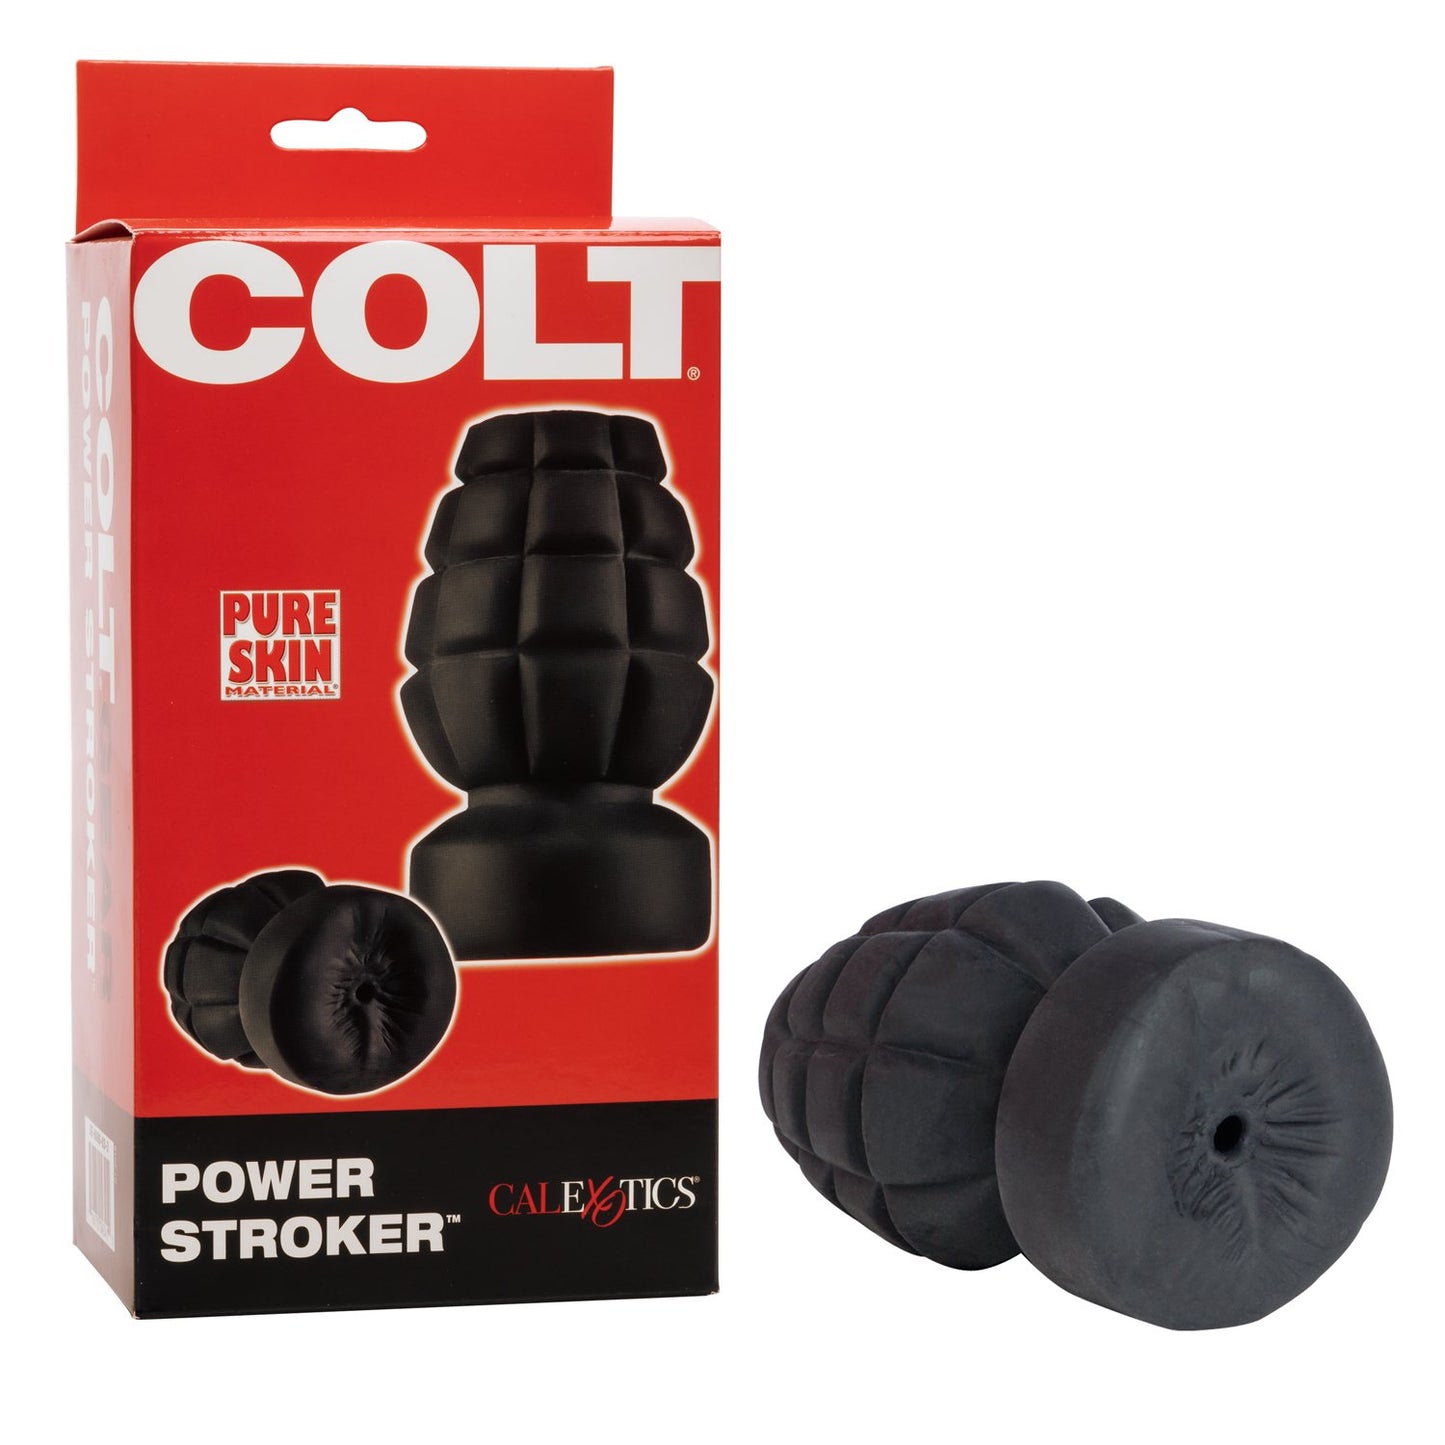 COLT Power Stroker